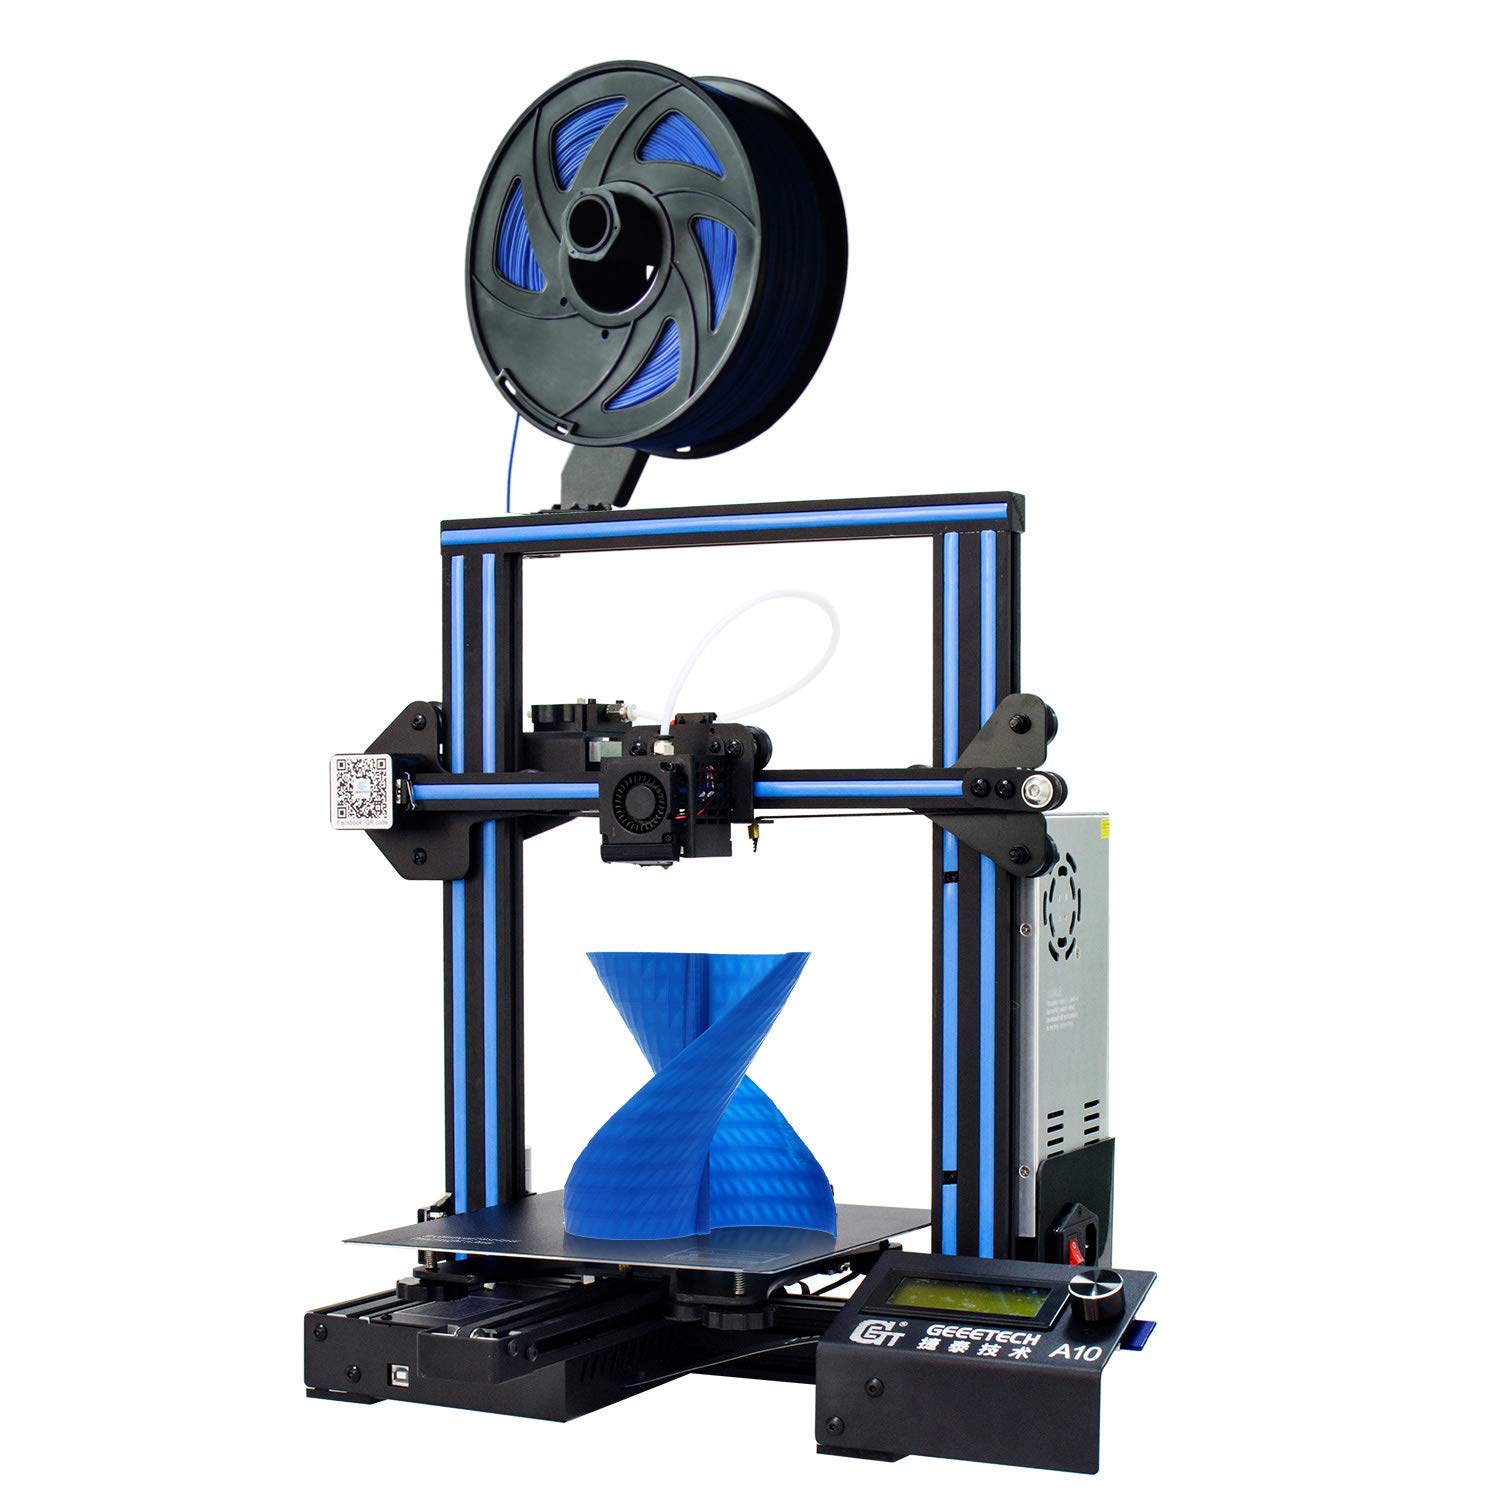 Impresora 3D barata y de caliadad